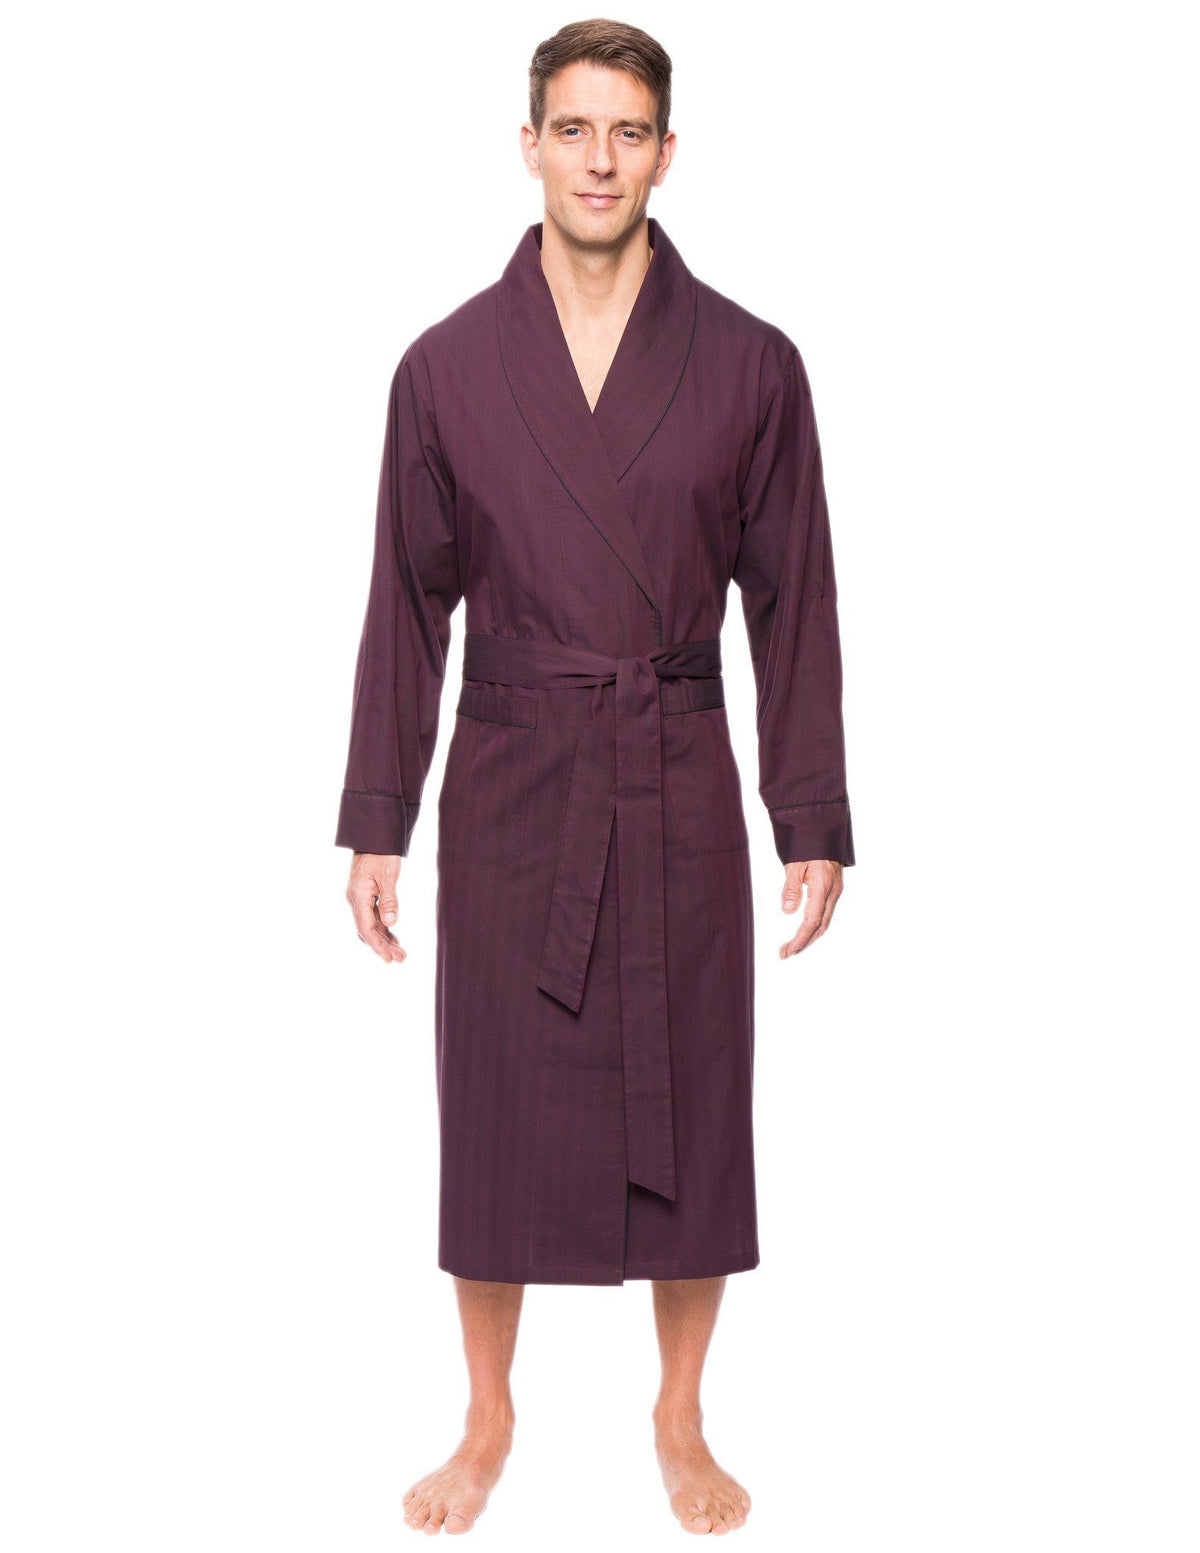 Mens Premium 100% Cotton Robe - Herringbone Fig/Black